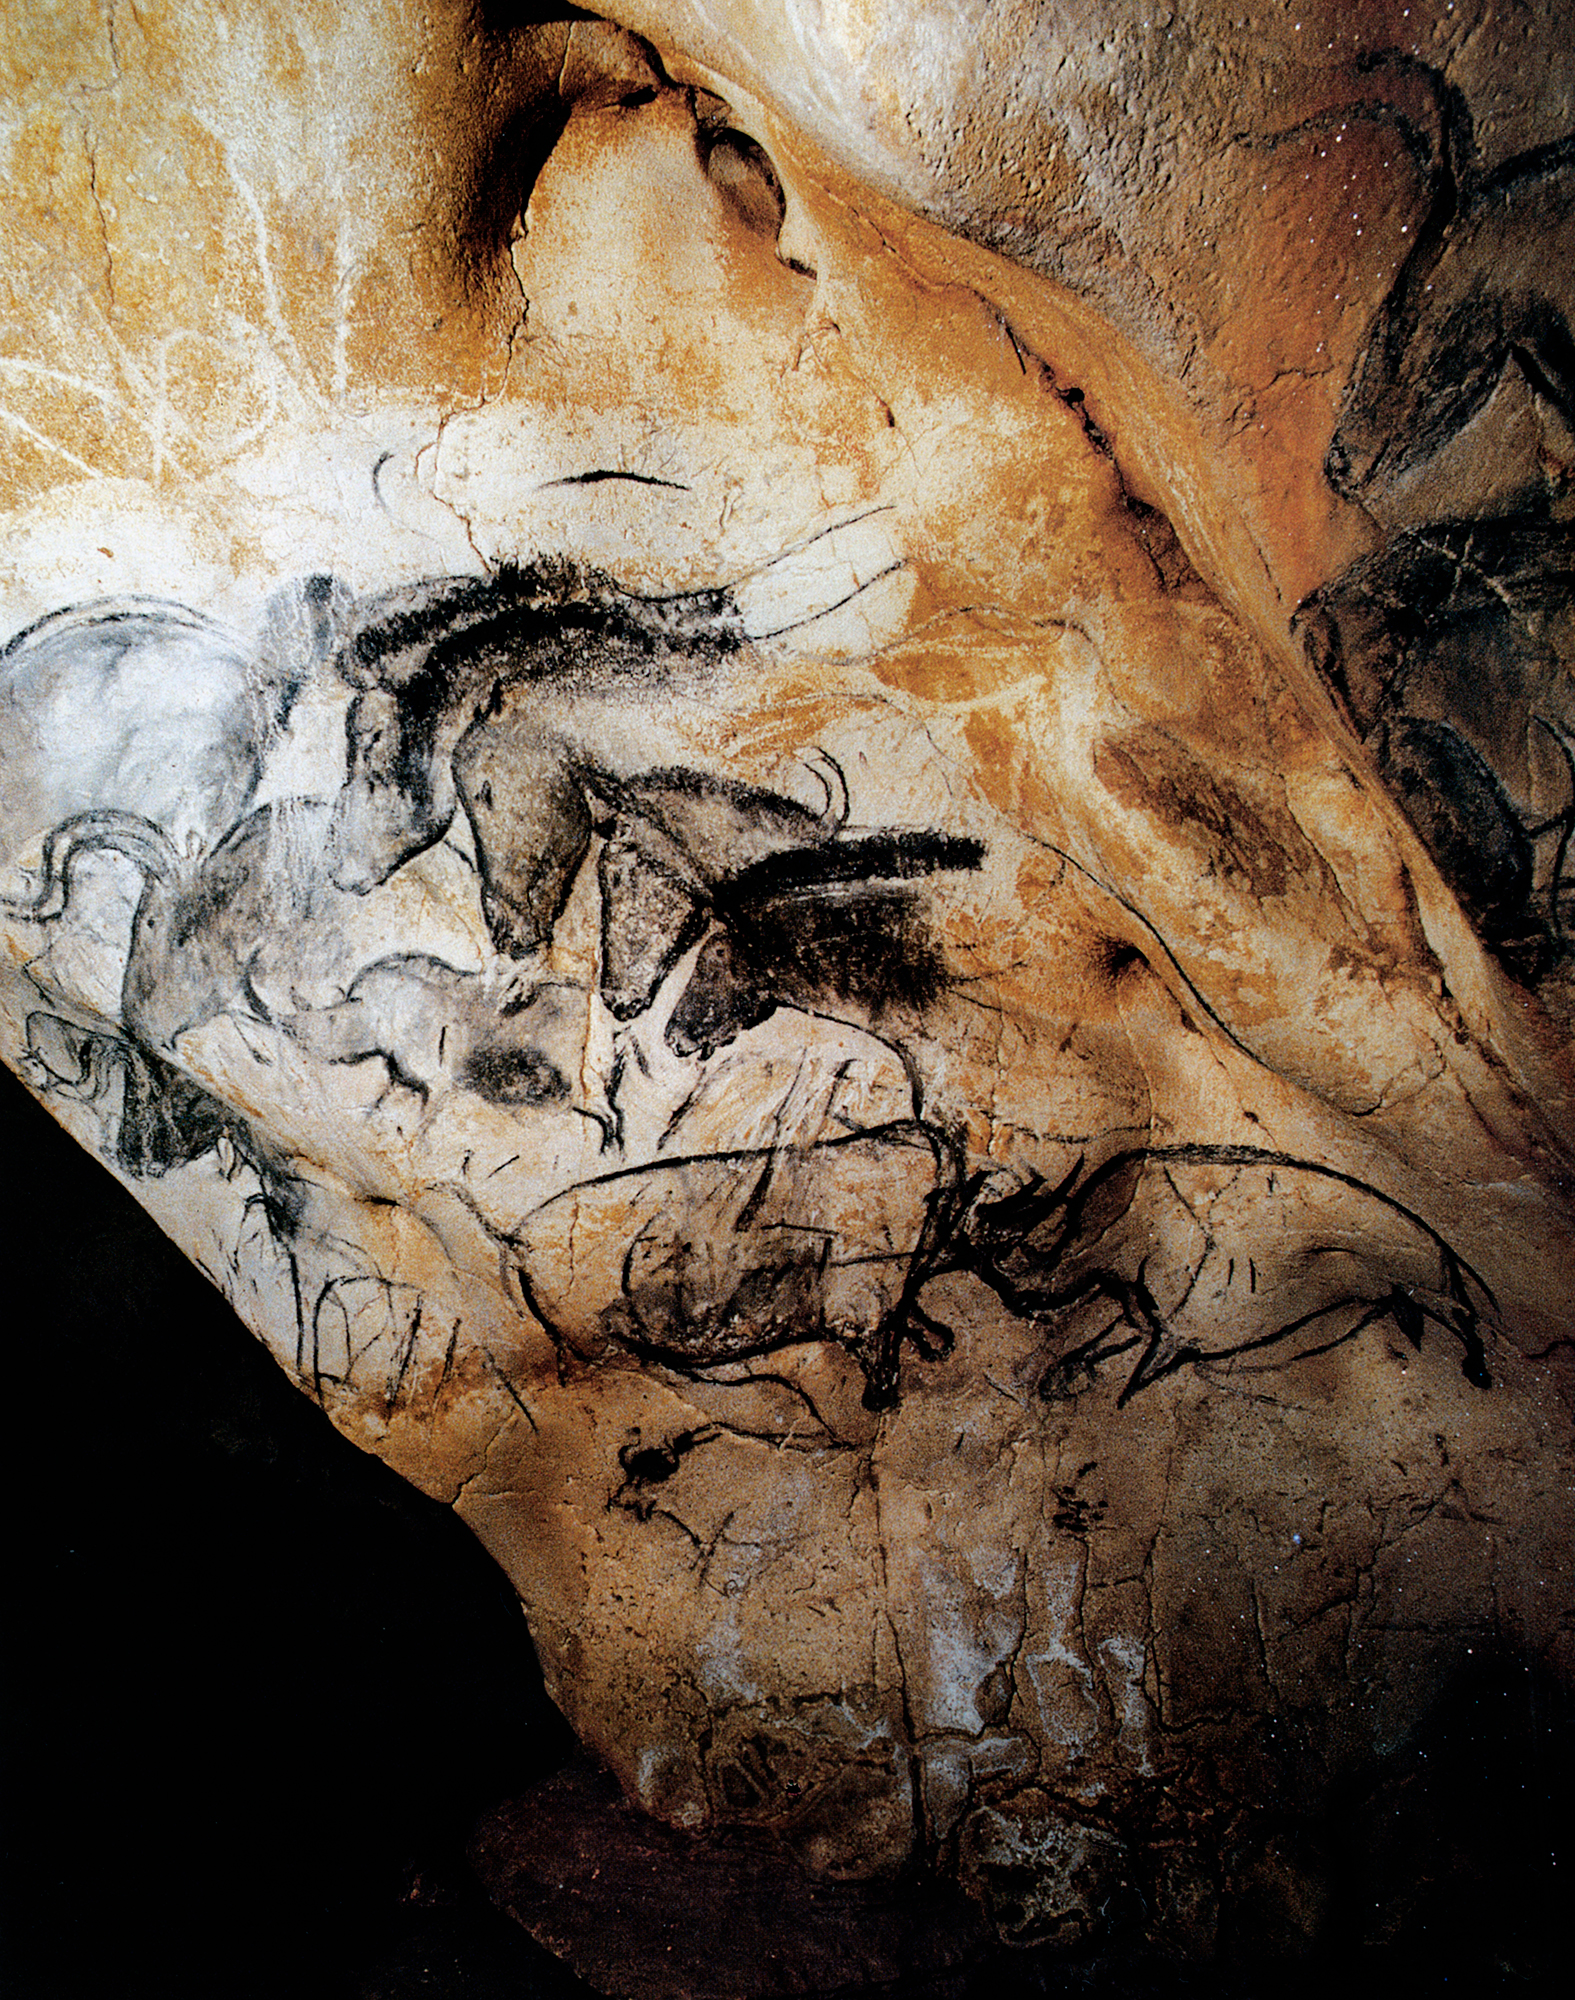 Chauvet Cave Paintings Rock Art France Bradshaw Foundation